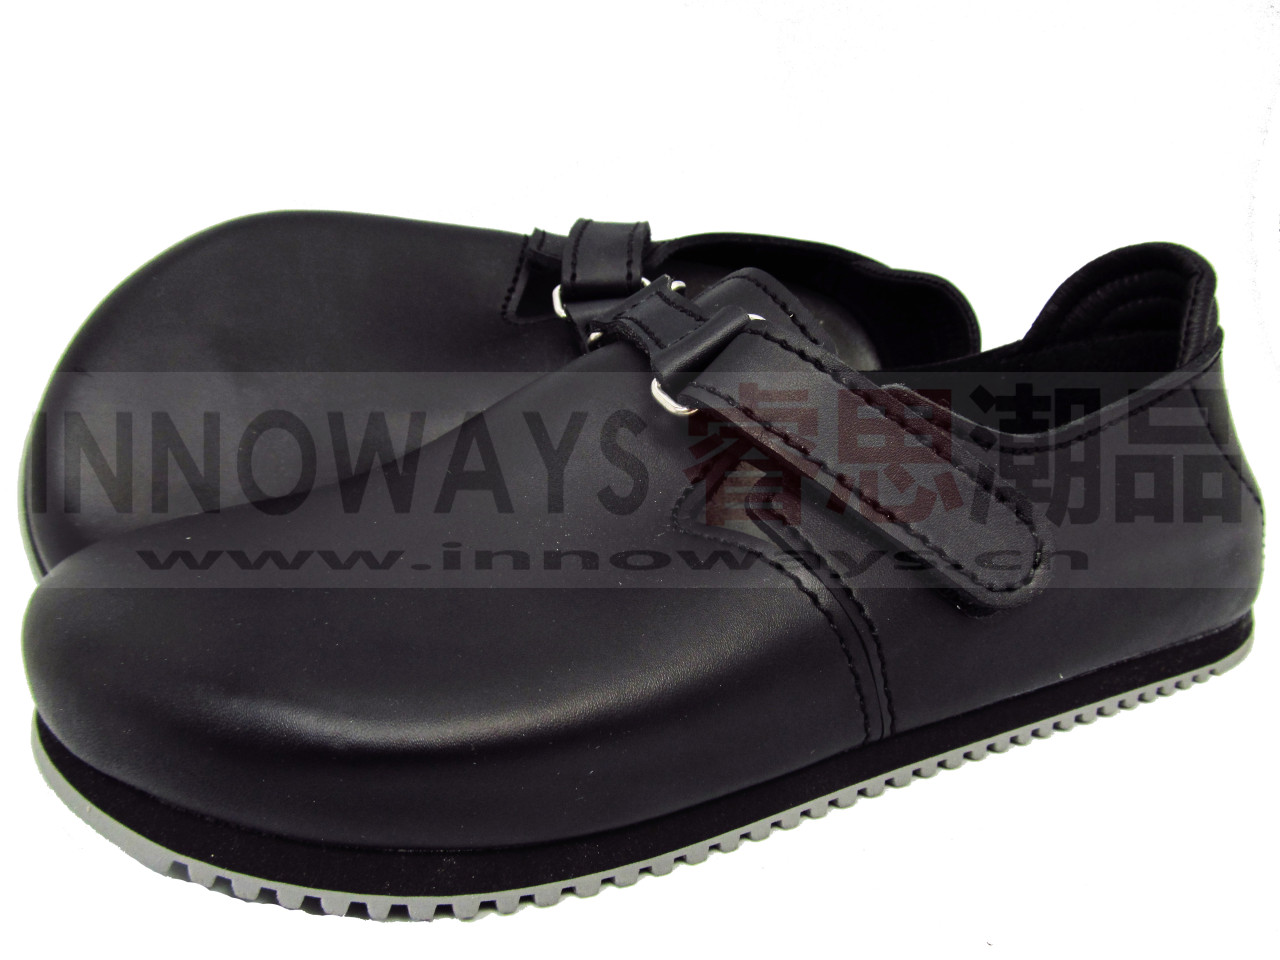 Birkenstock alpro all-inclusive protective shoes g500 super non-slip ...